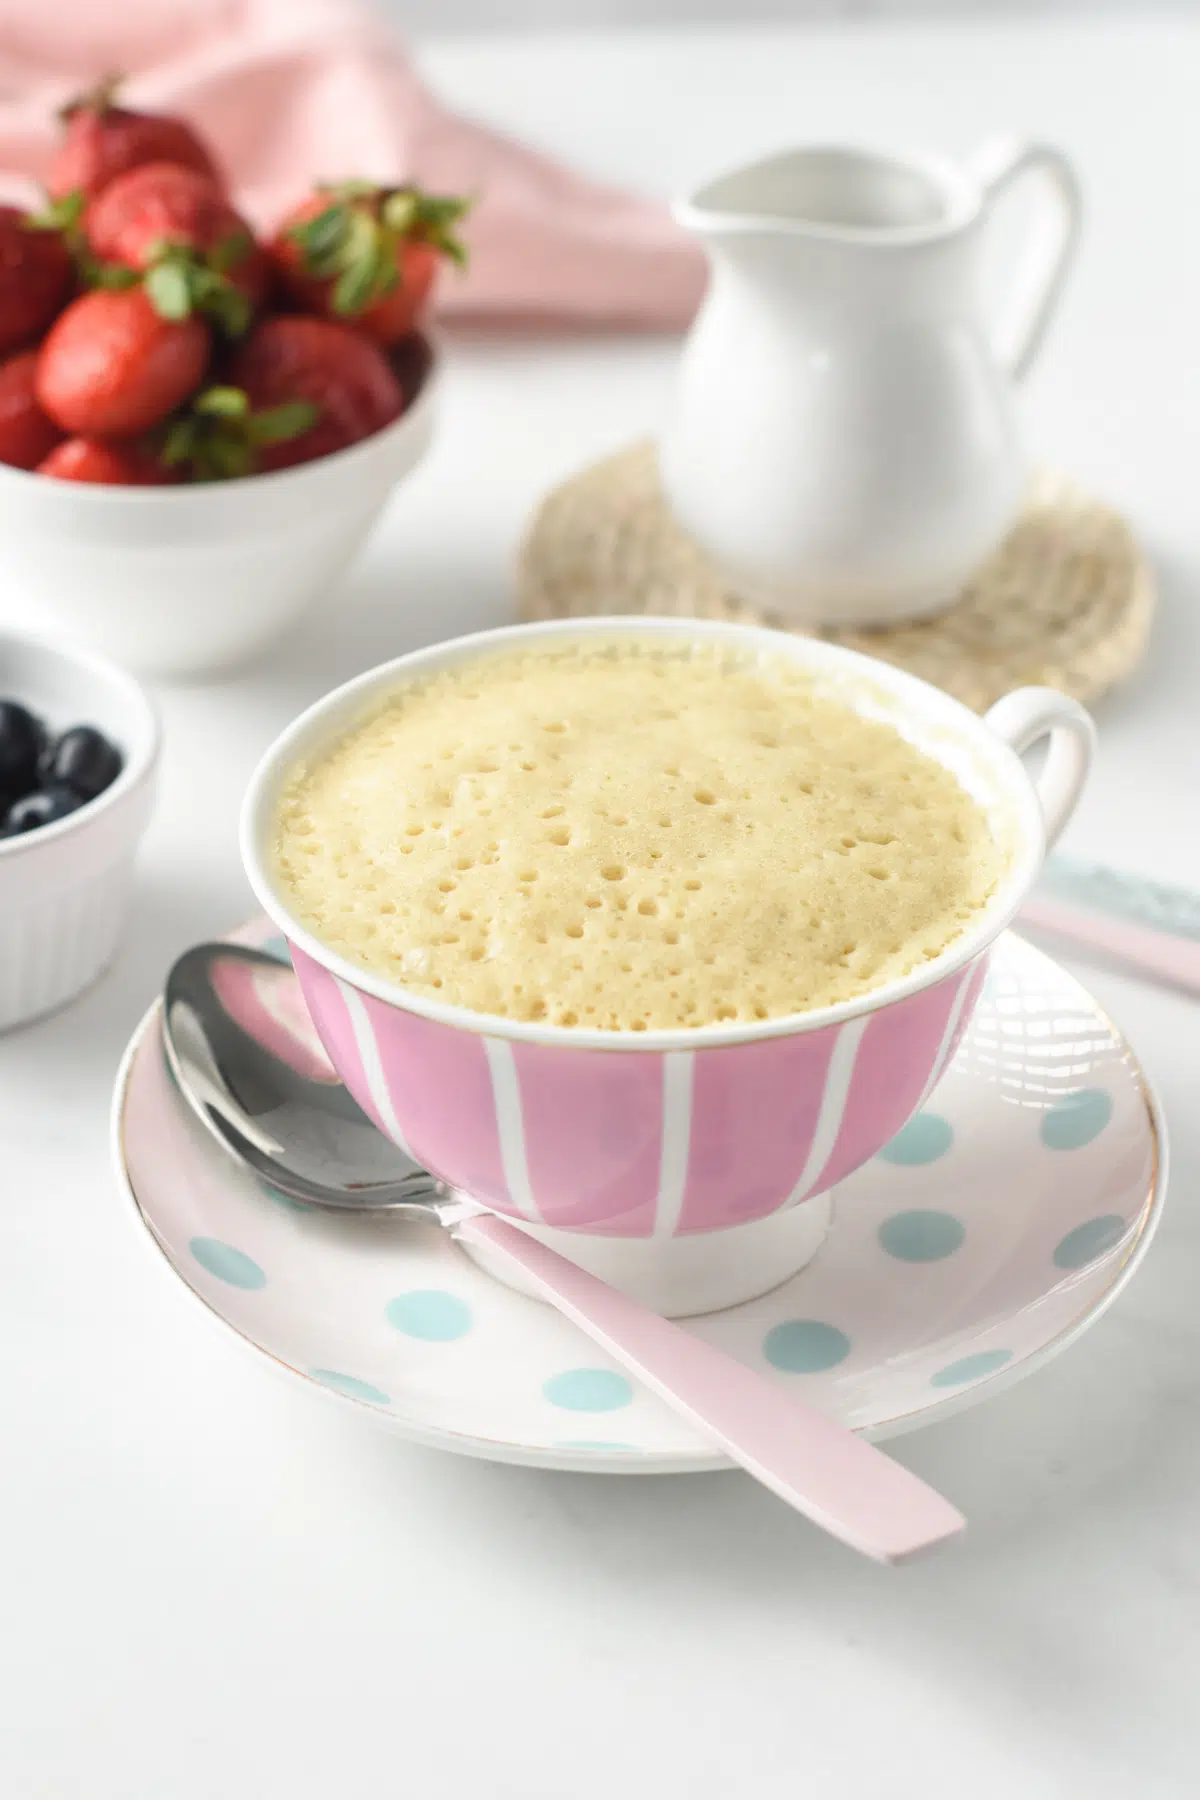 Pancake In a Mug microwave recipe 90 seconds vegan egg free